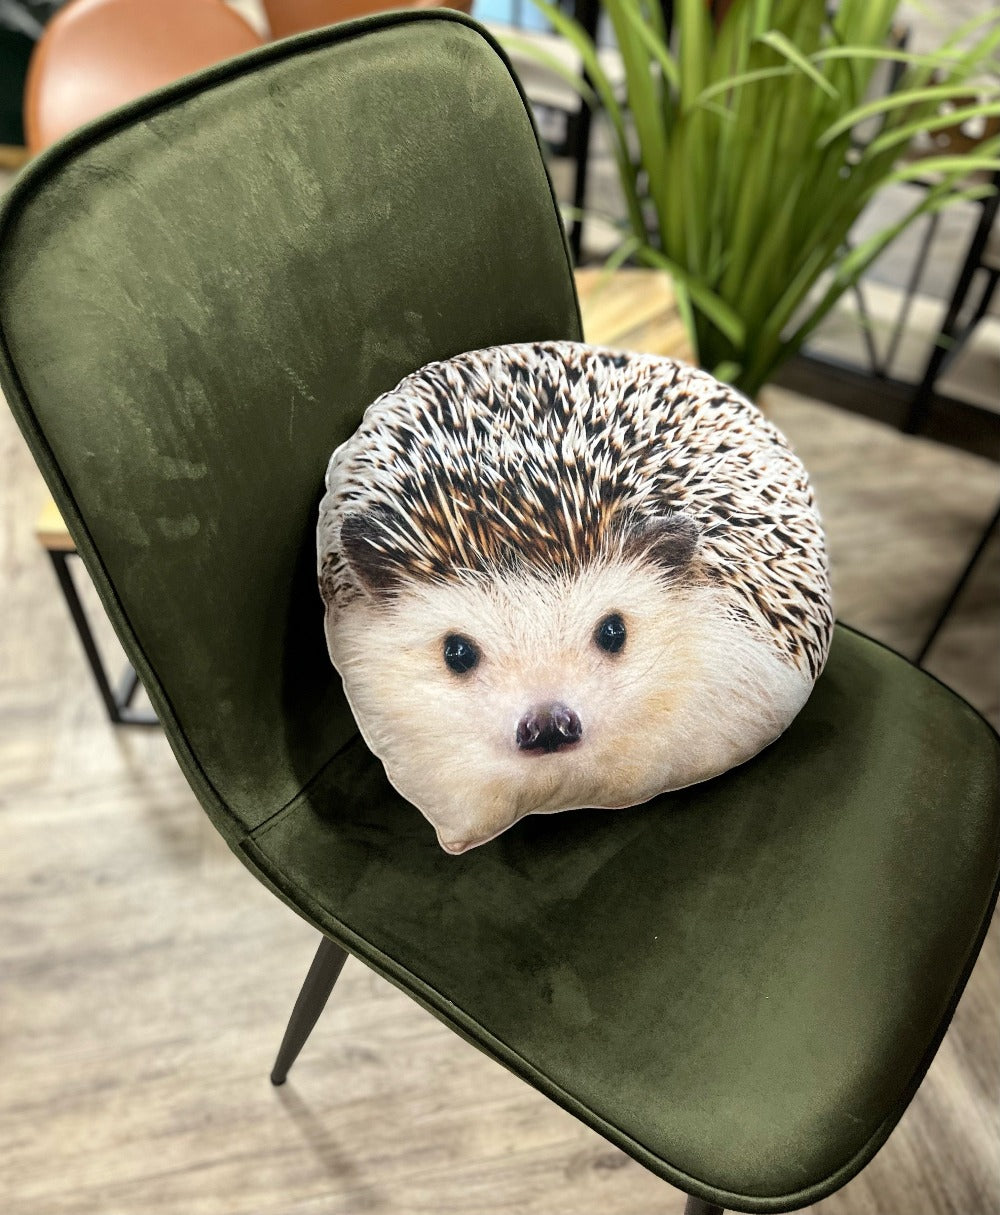 hedgehog pillow